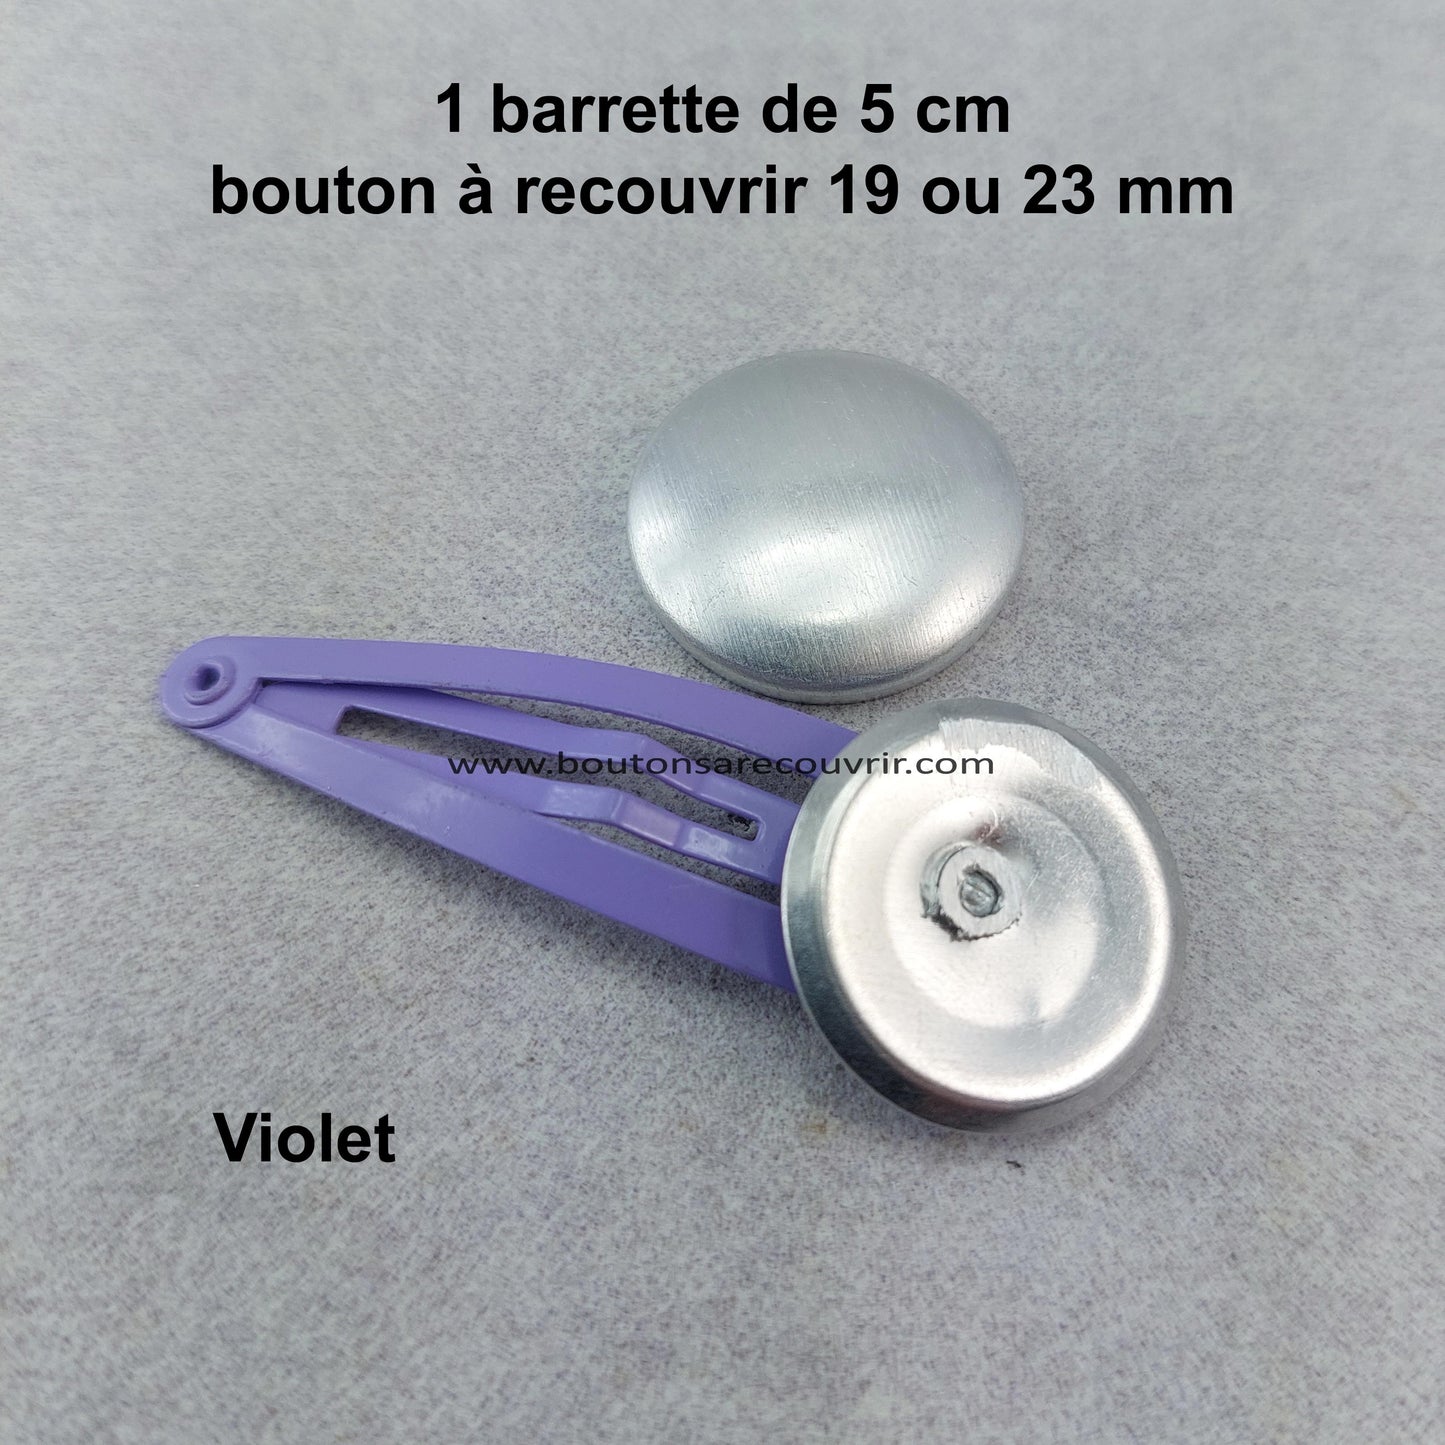 Barrette violette de 5 cm - bouton à recouvrir